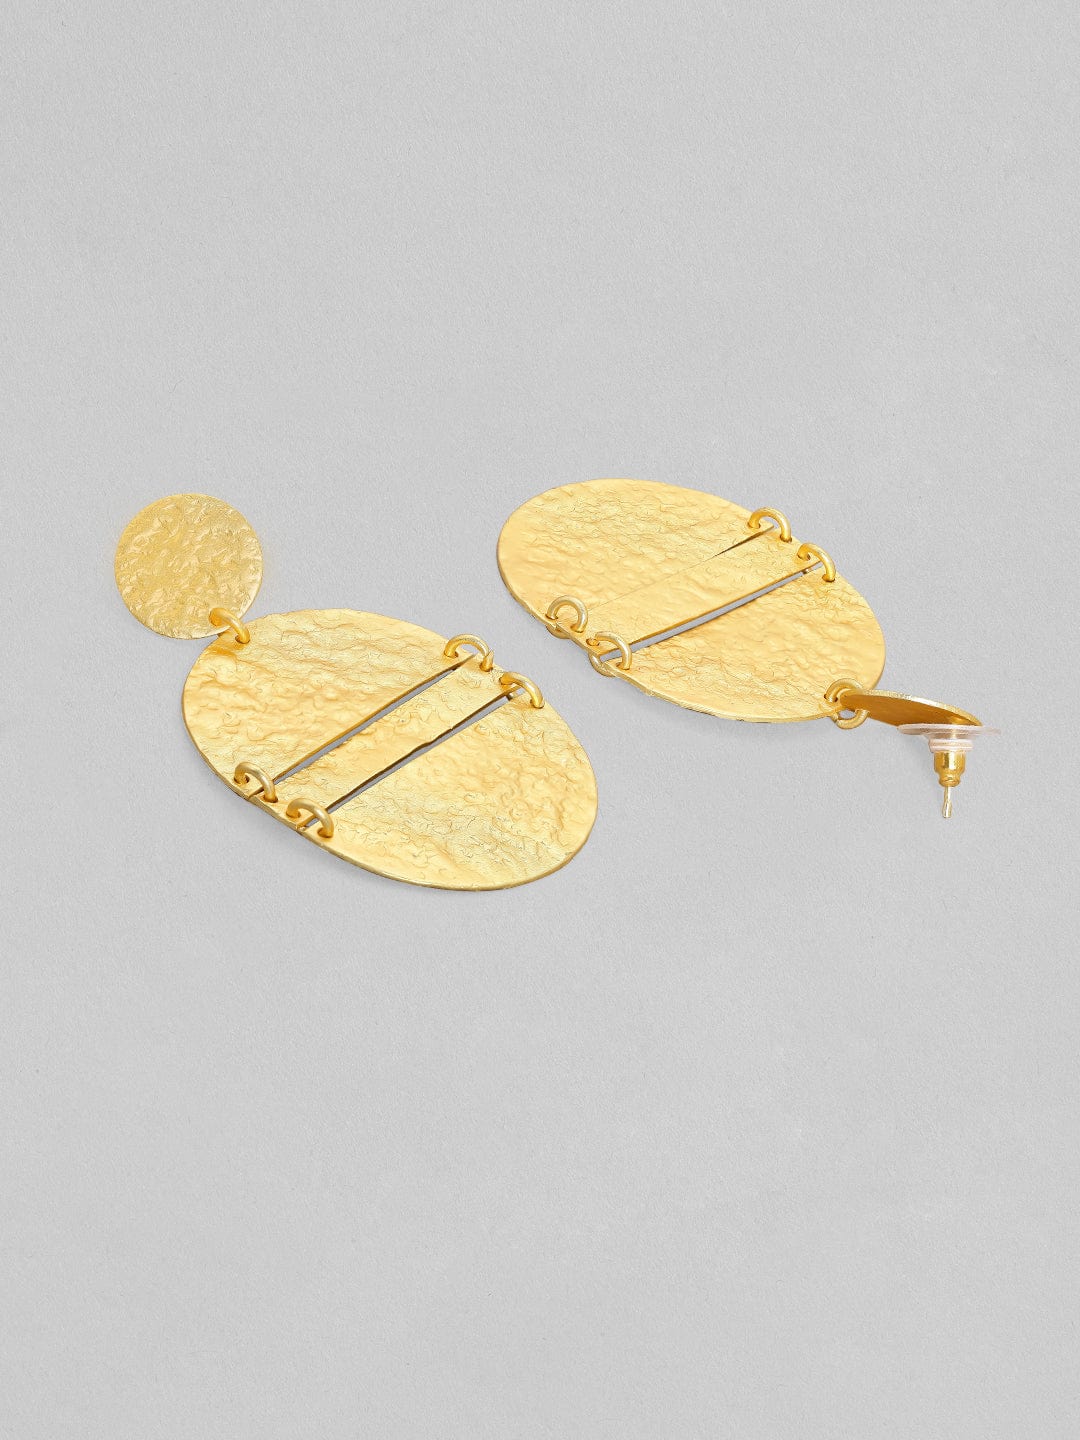 Rose Gold Tone Tear Drop Earrings Simple Modern Drop Dangle Earrings Gold  Steel Hook Earrings Minimalist Gold Earrings Trendy Metal Earrings - Etsy | Drop  earrings simple, Minimalist earrings gold, Long dangle earrings